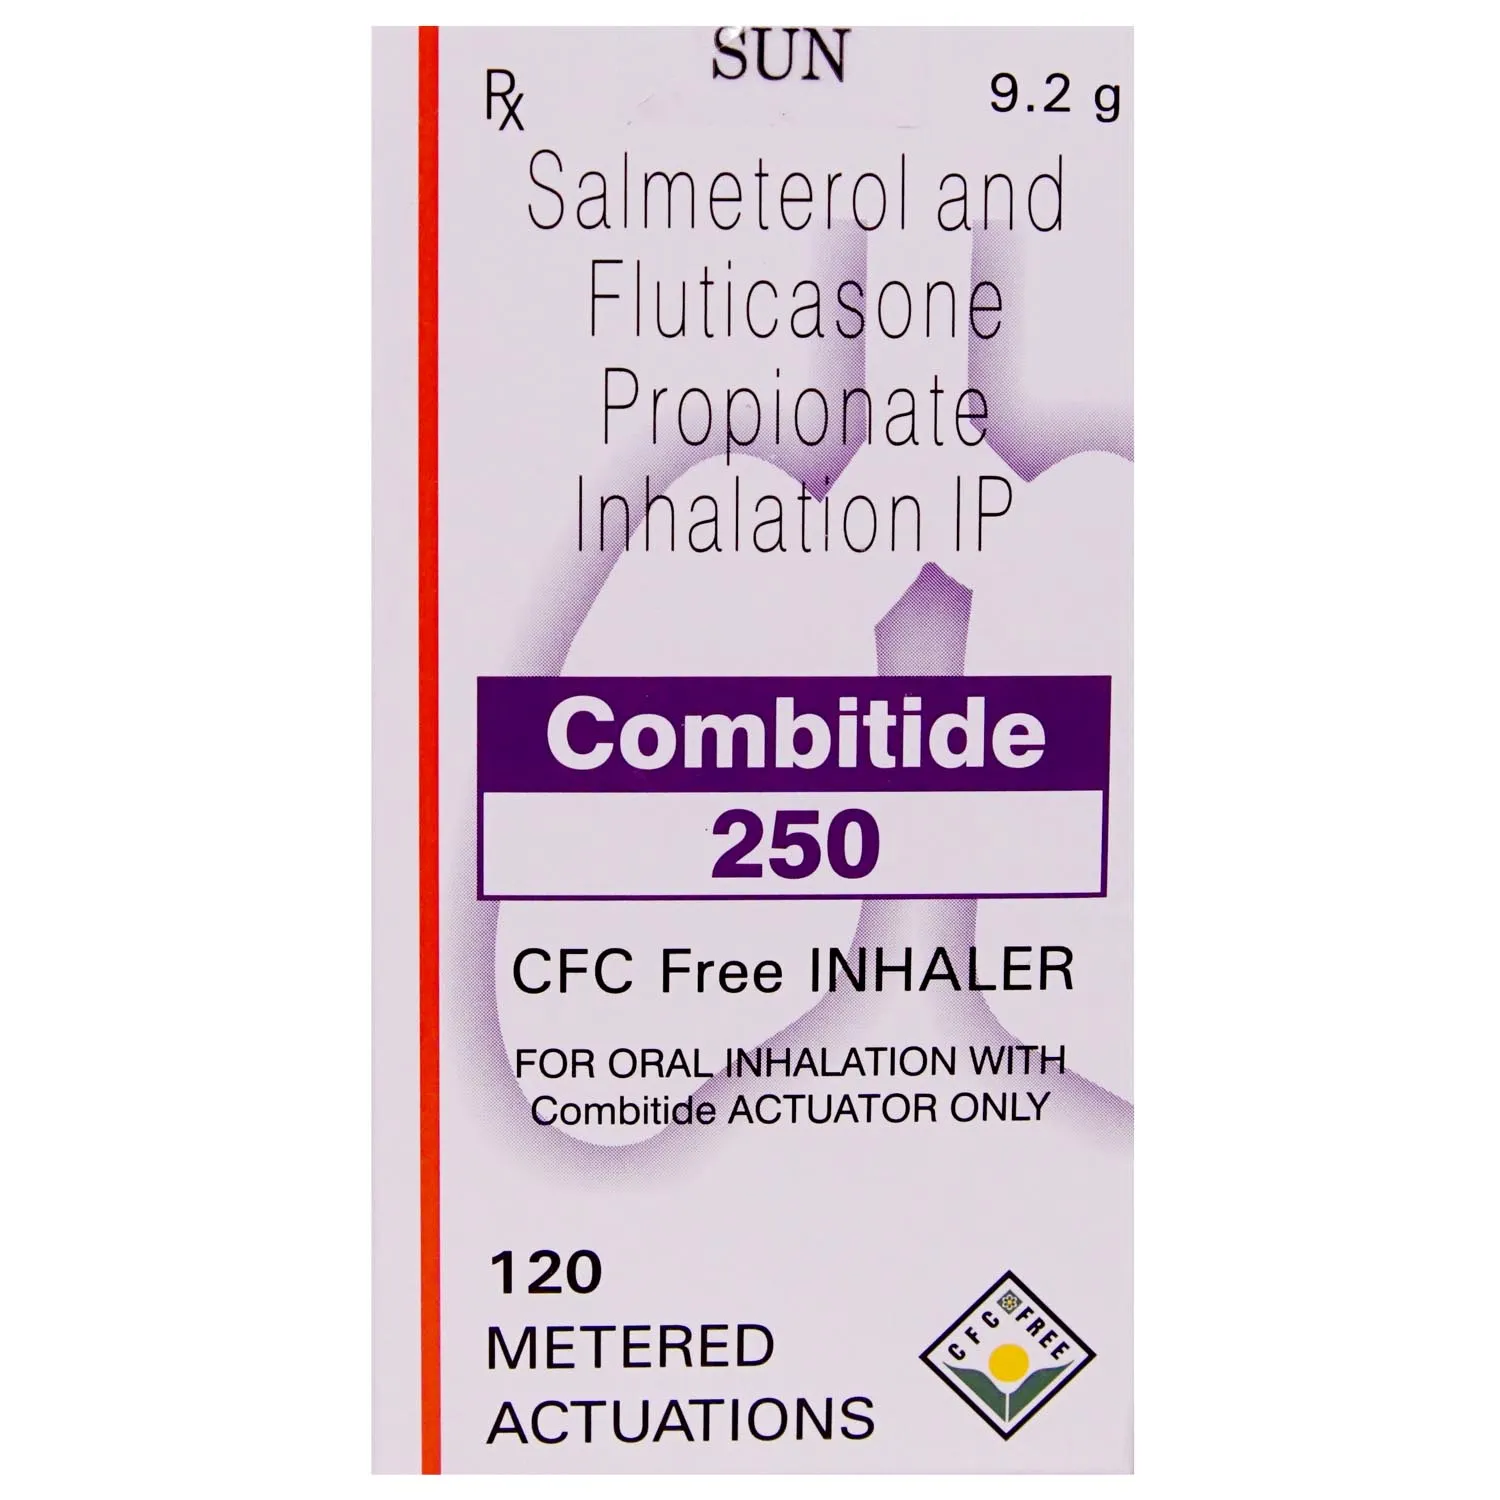 Combitide 250 CFC Free Inhaler